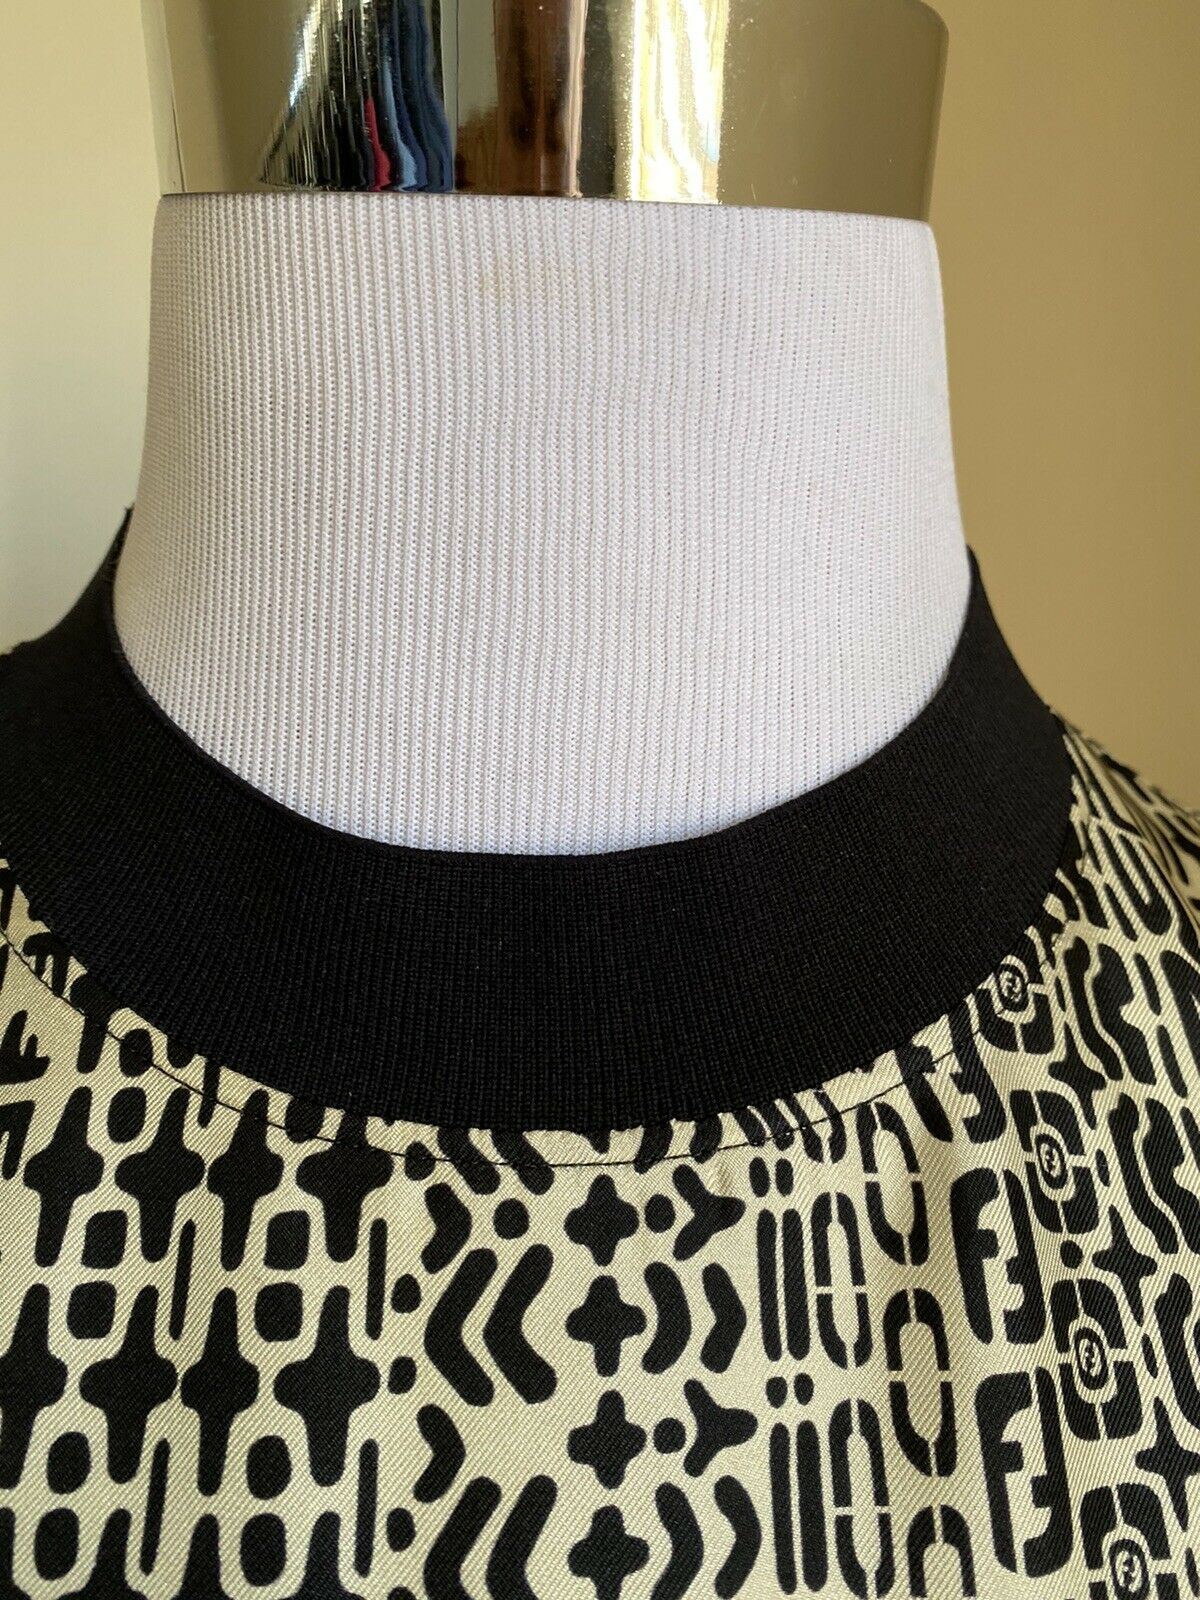 New $920 Fendi Men FF Monogram oversized Short Sleeve T Shirt M White/Black